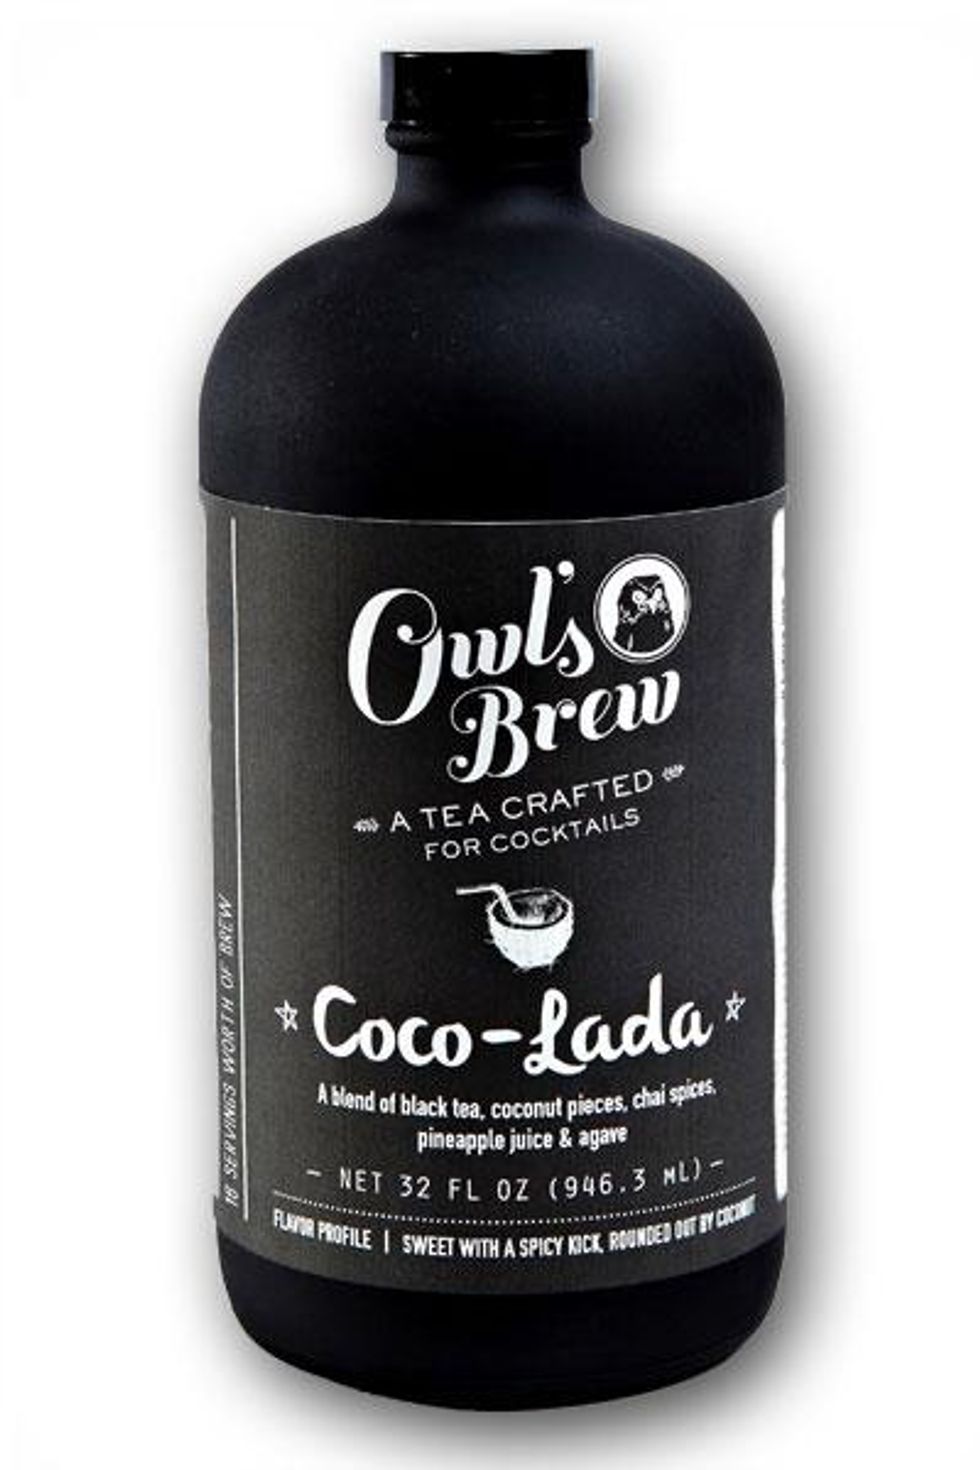 Coco-lada